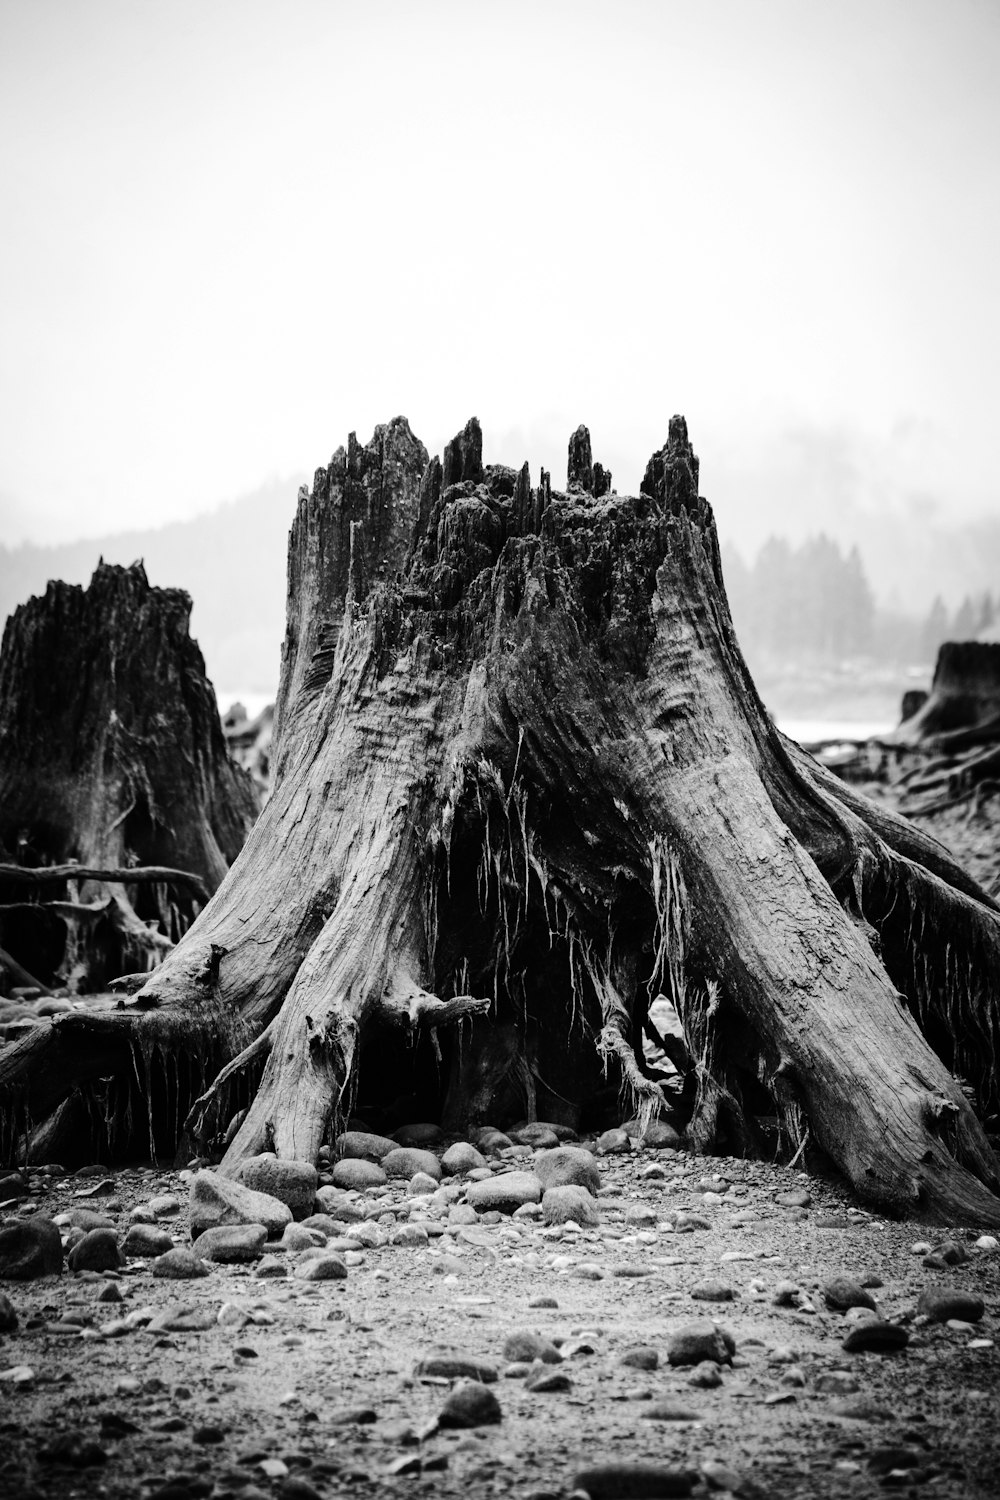 fotografia in scala di grigi del tronco di albero tagliato